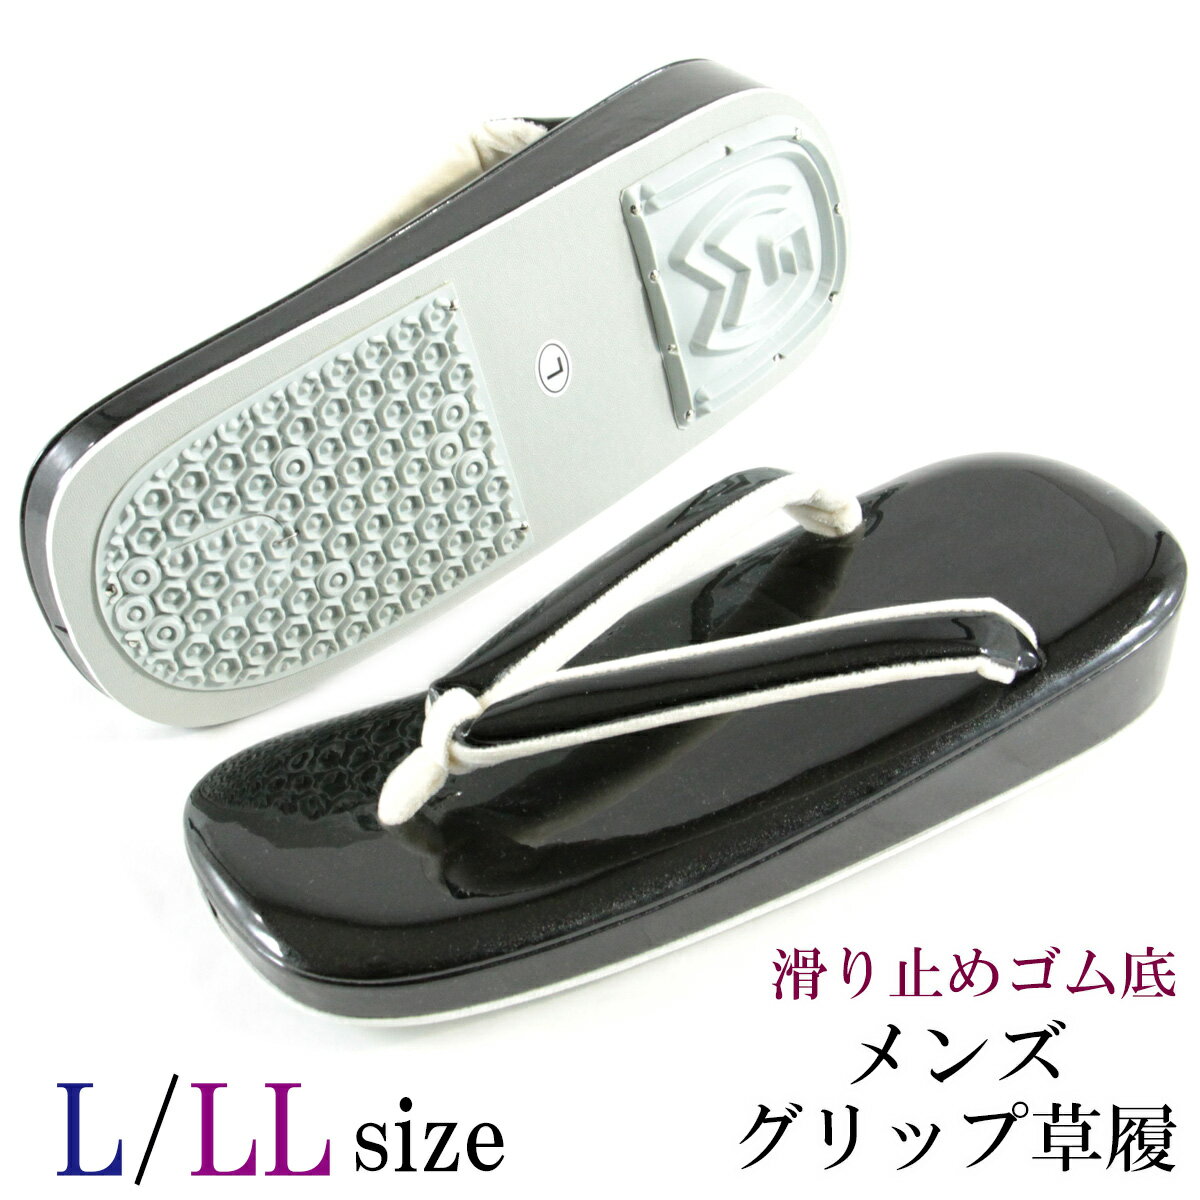 グリップ草履 メンズ -3- 合成皮革 L/LL-size 黒